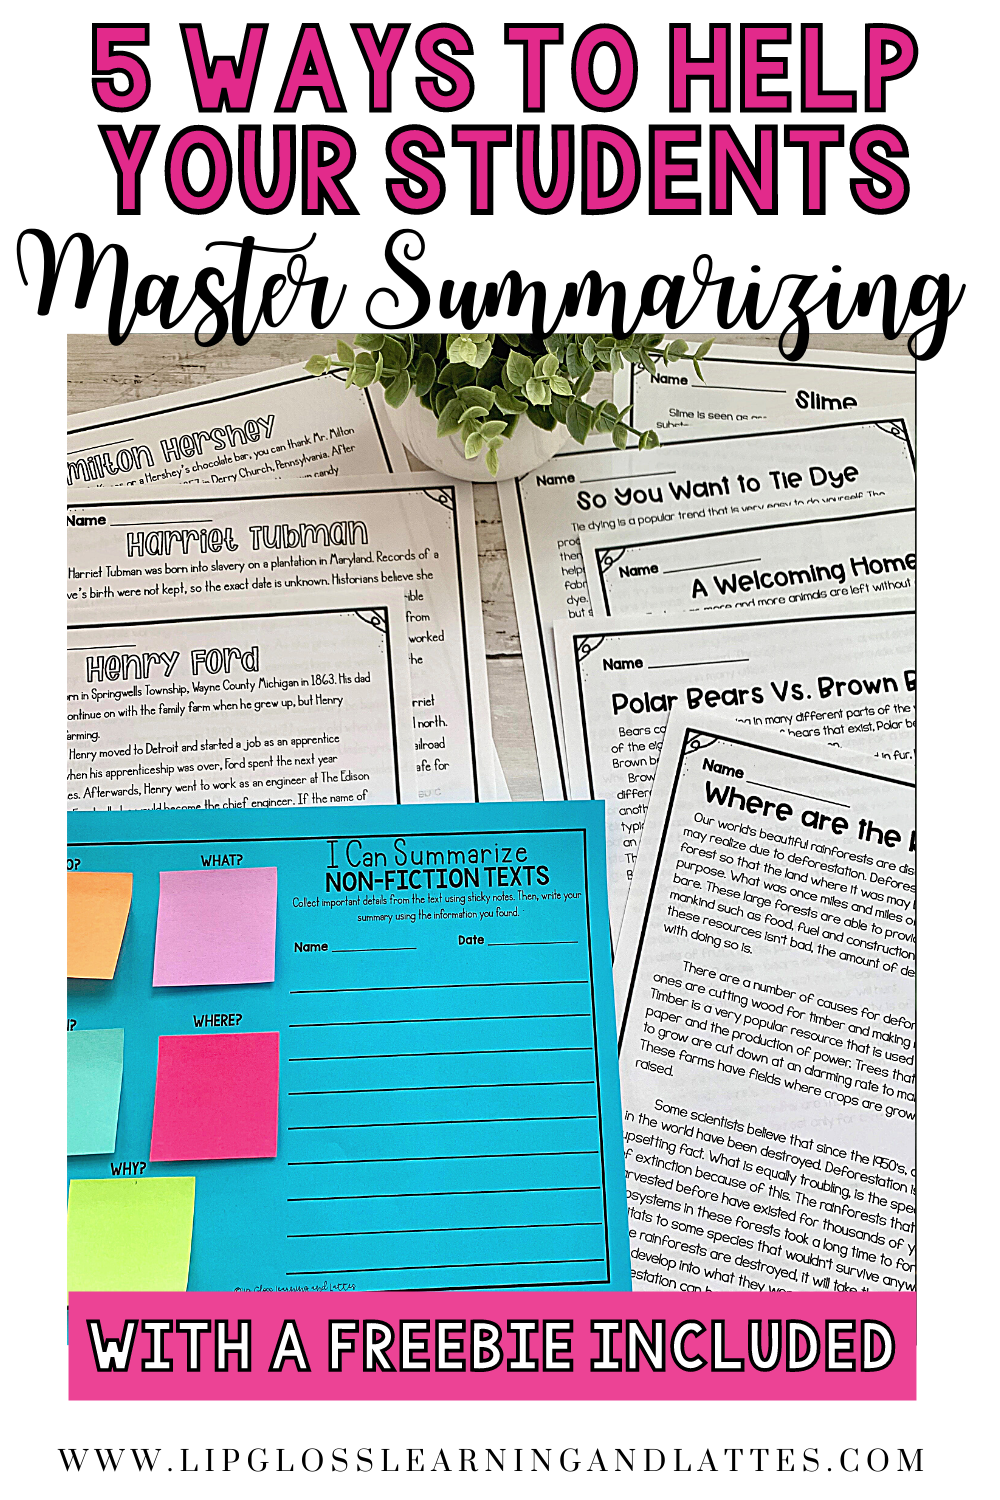 5-ways-to-help-students-master-summarizing